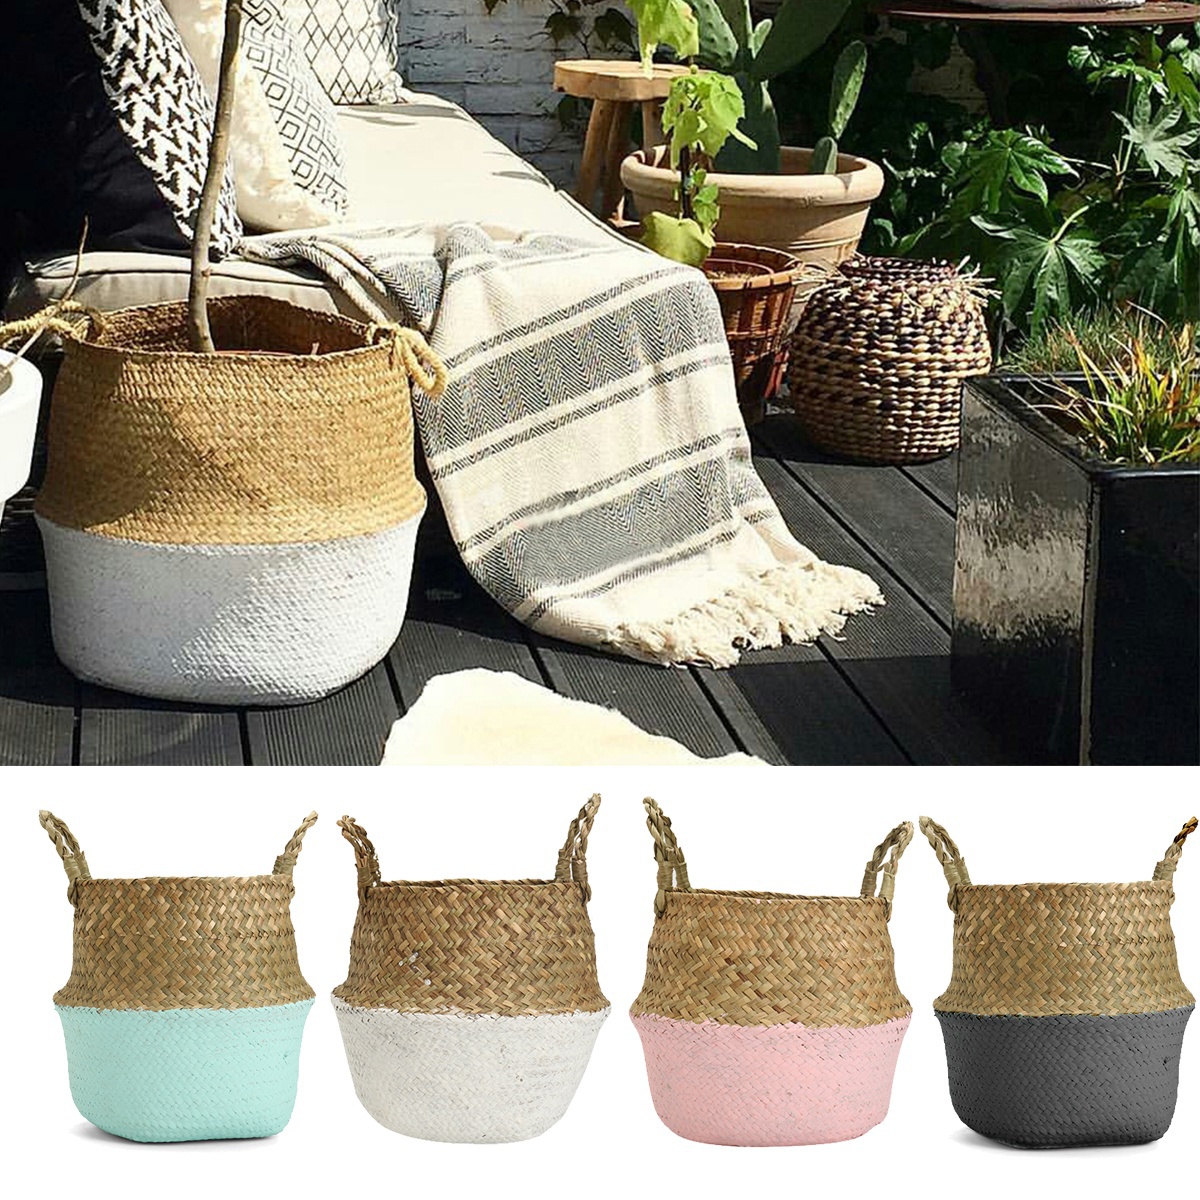 Foldable-Rattan-Straw-Basket-Flower-Pot-Hanging-Wicker-Storage-Baskets-Garden-Accessories-1217819-10